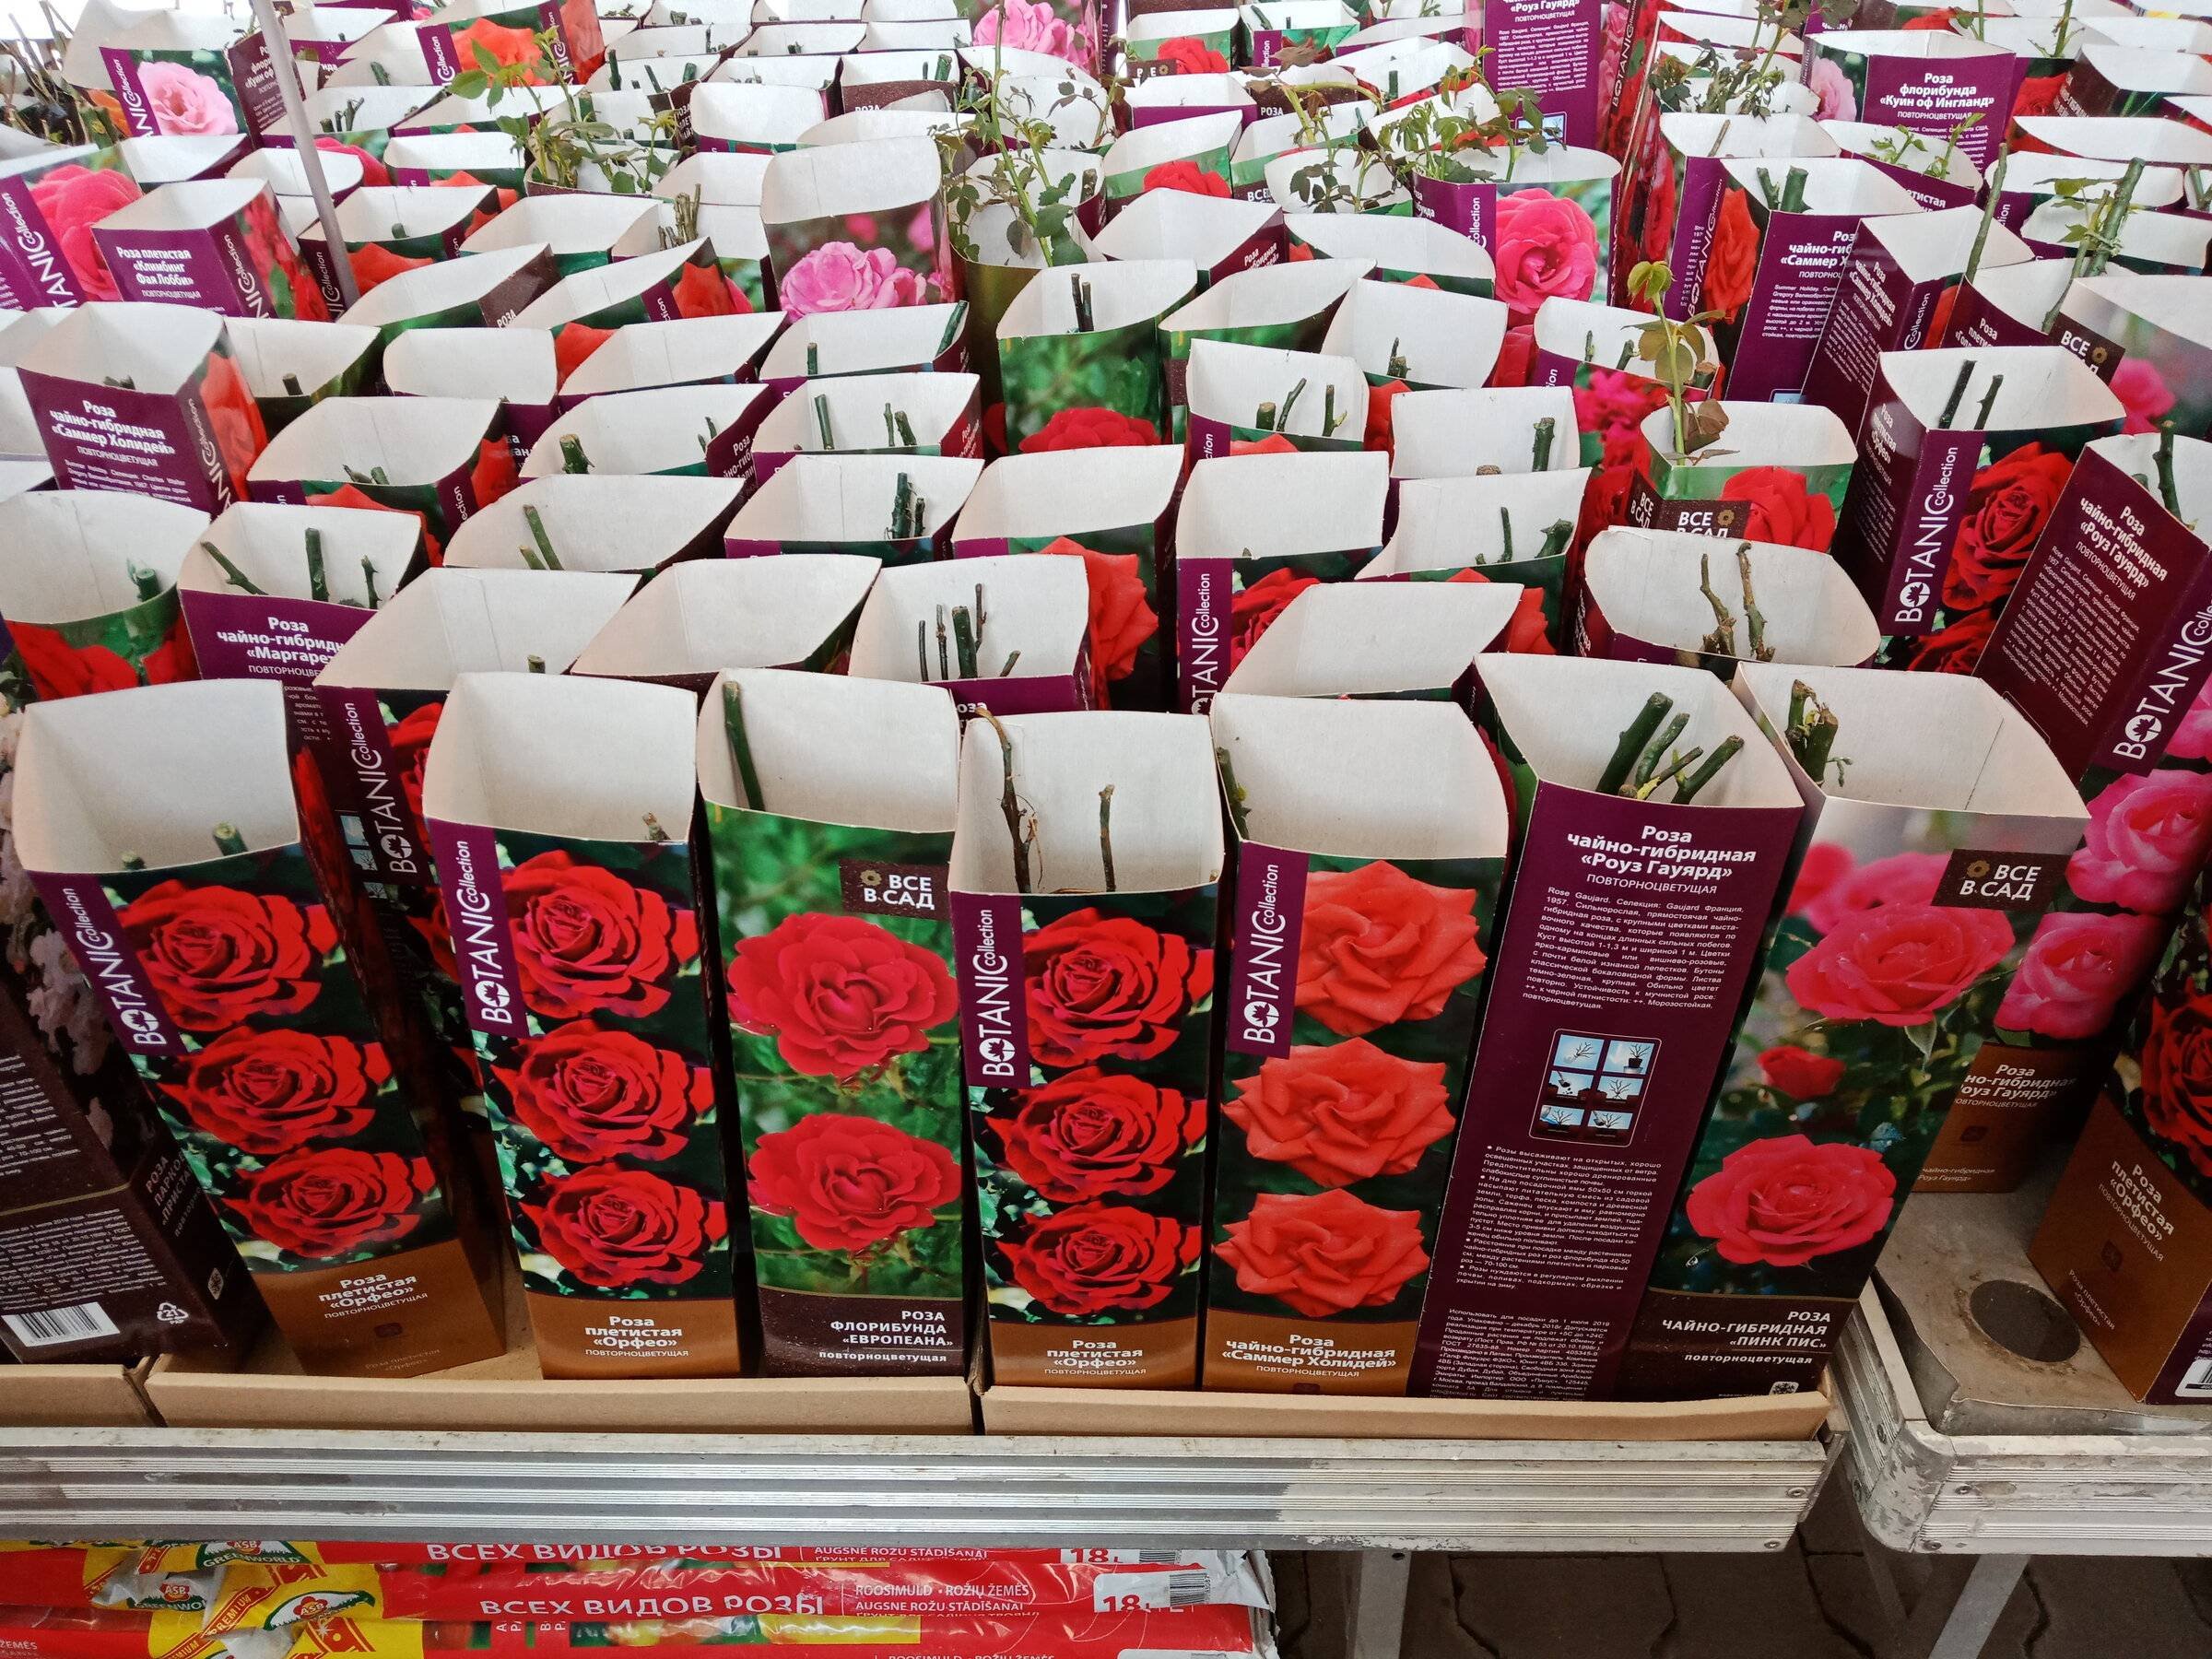 Саженцы роз после покупки. Саженцы роз в коробках. Рассада роз. Саженцы роз в Ашане. Сажгняы роз в коробочках в магазине.